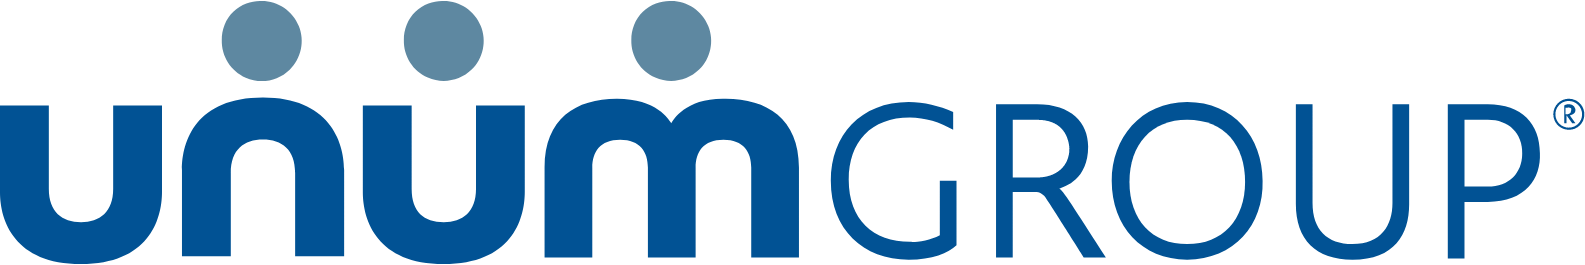 Unum logo large (transparent PNG)